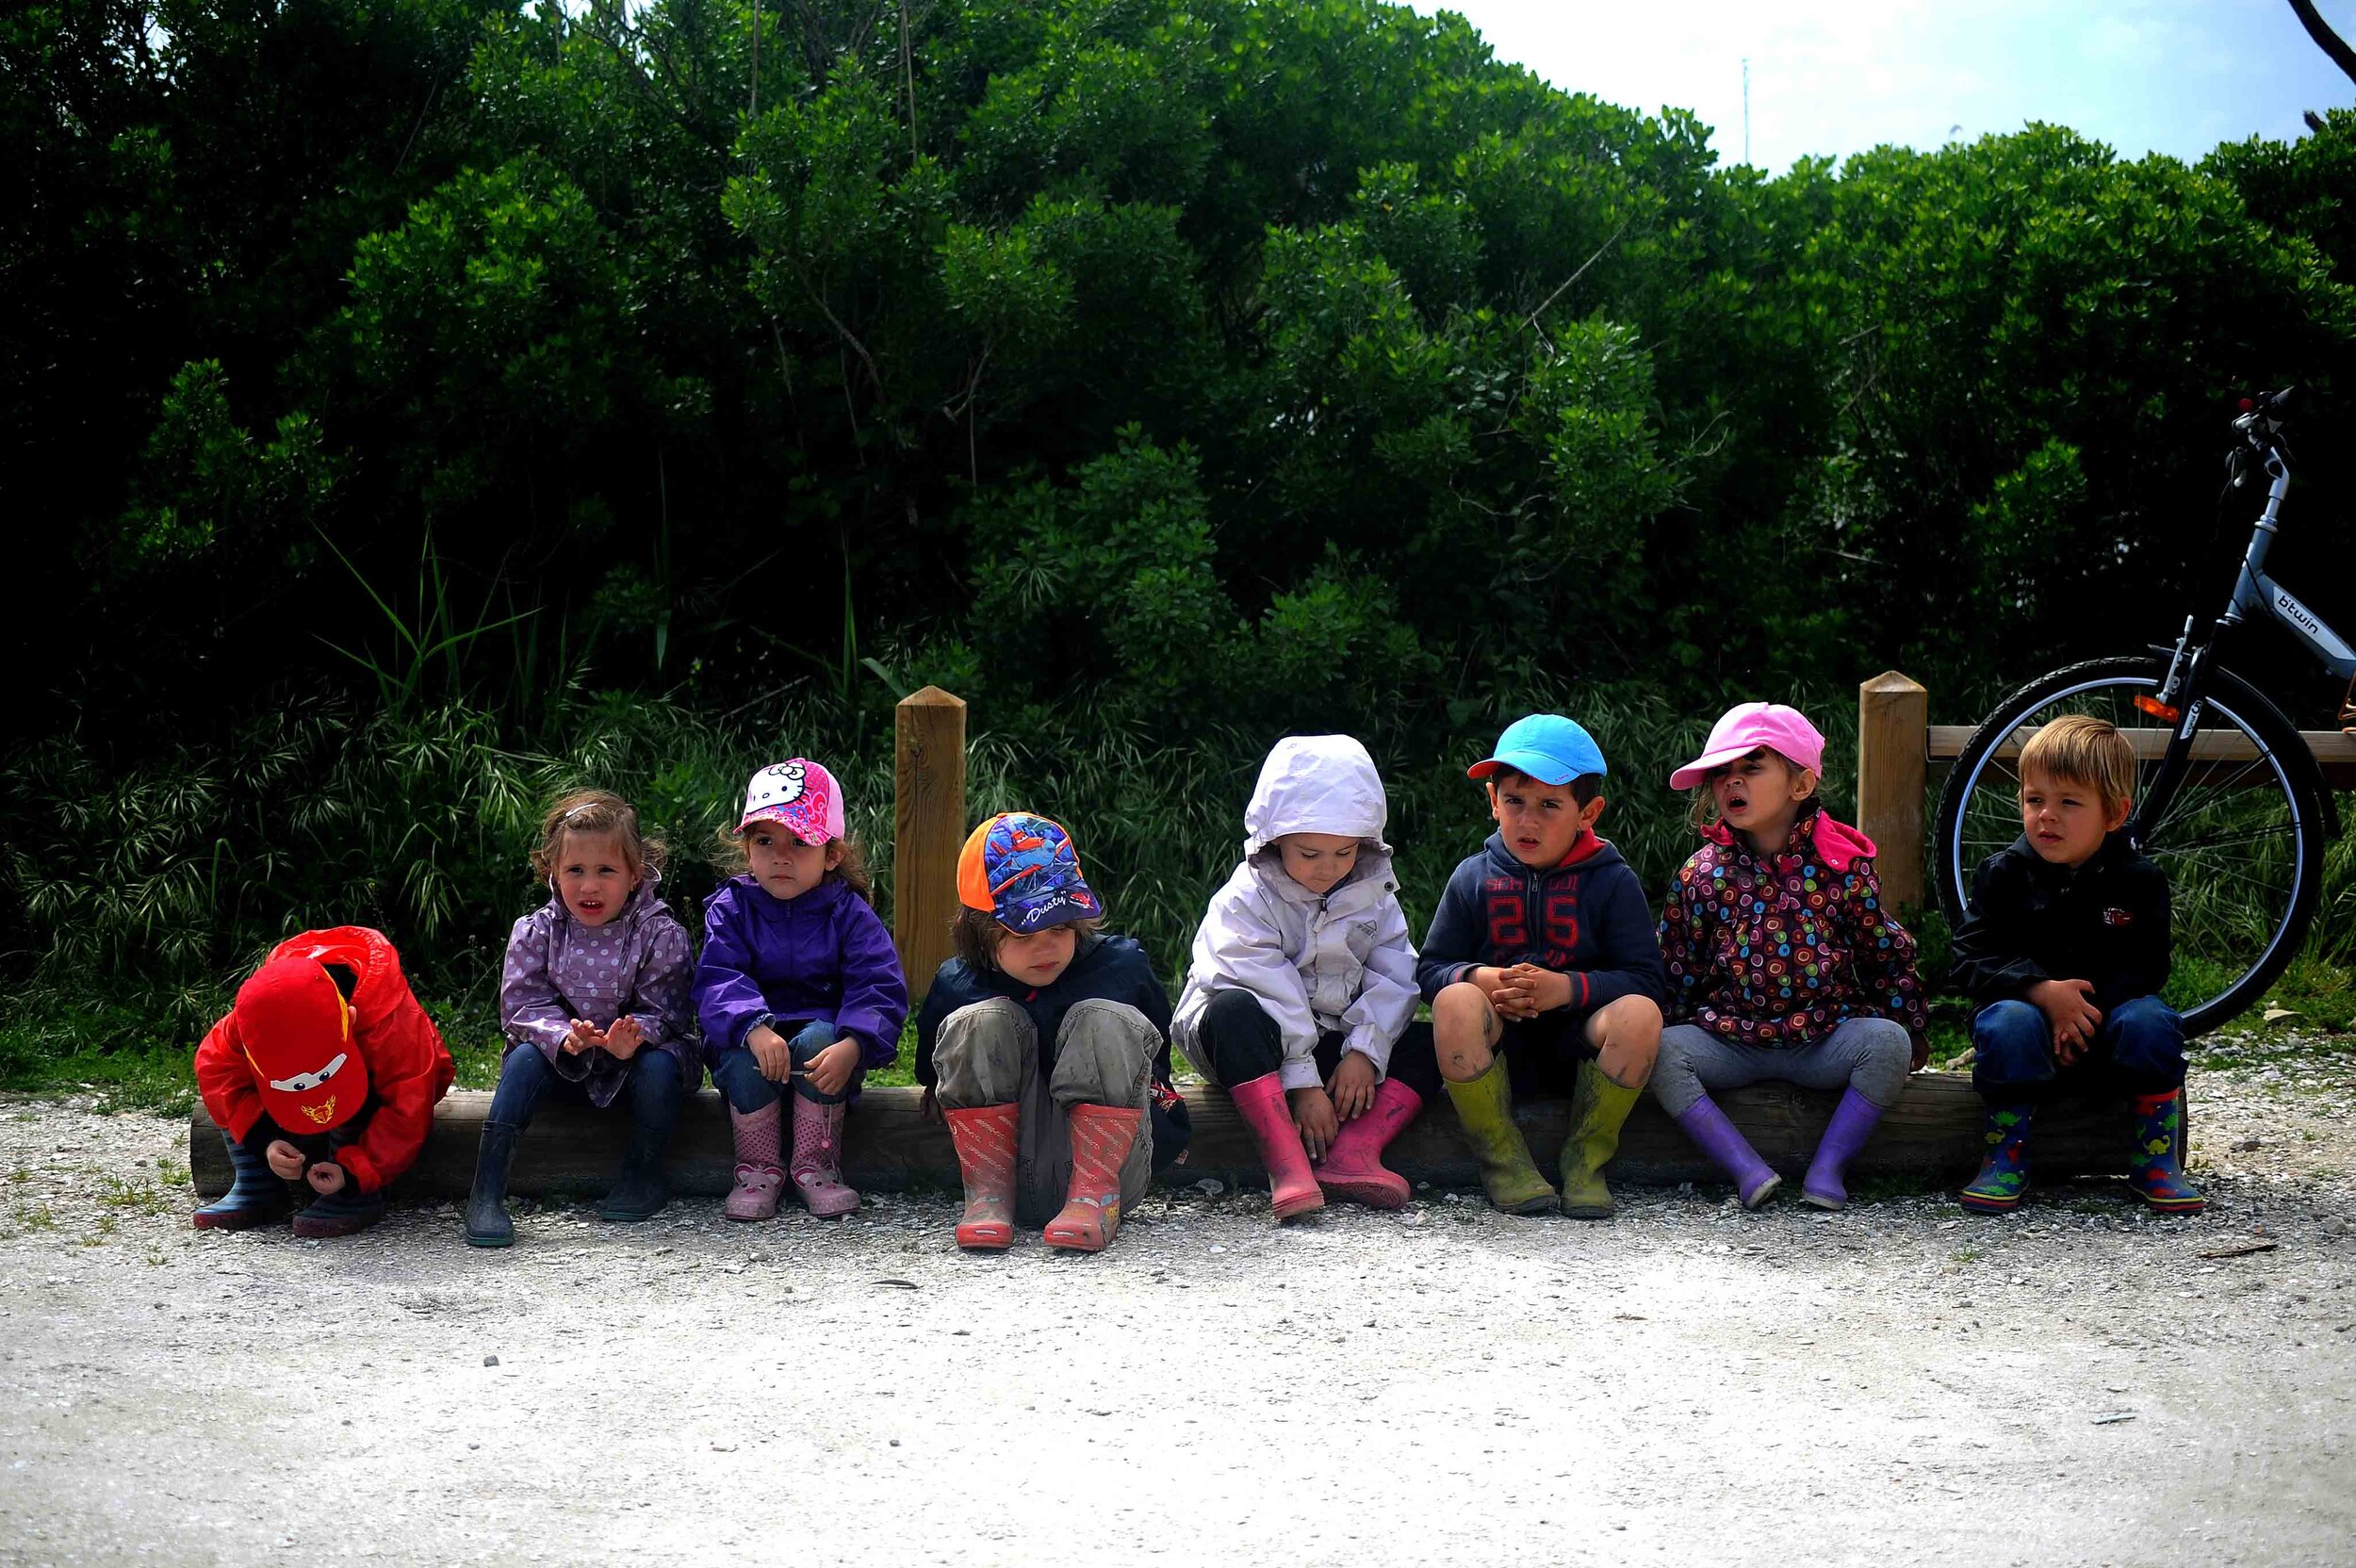 Kids at Andernos, France.